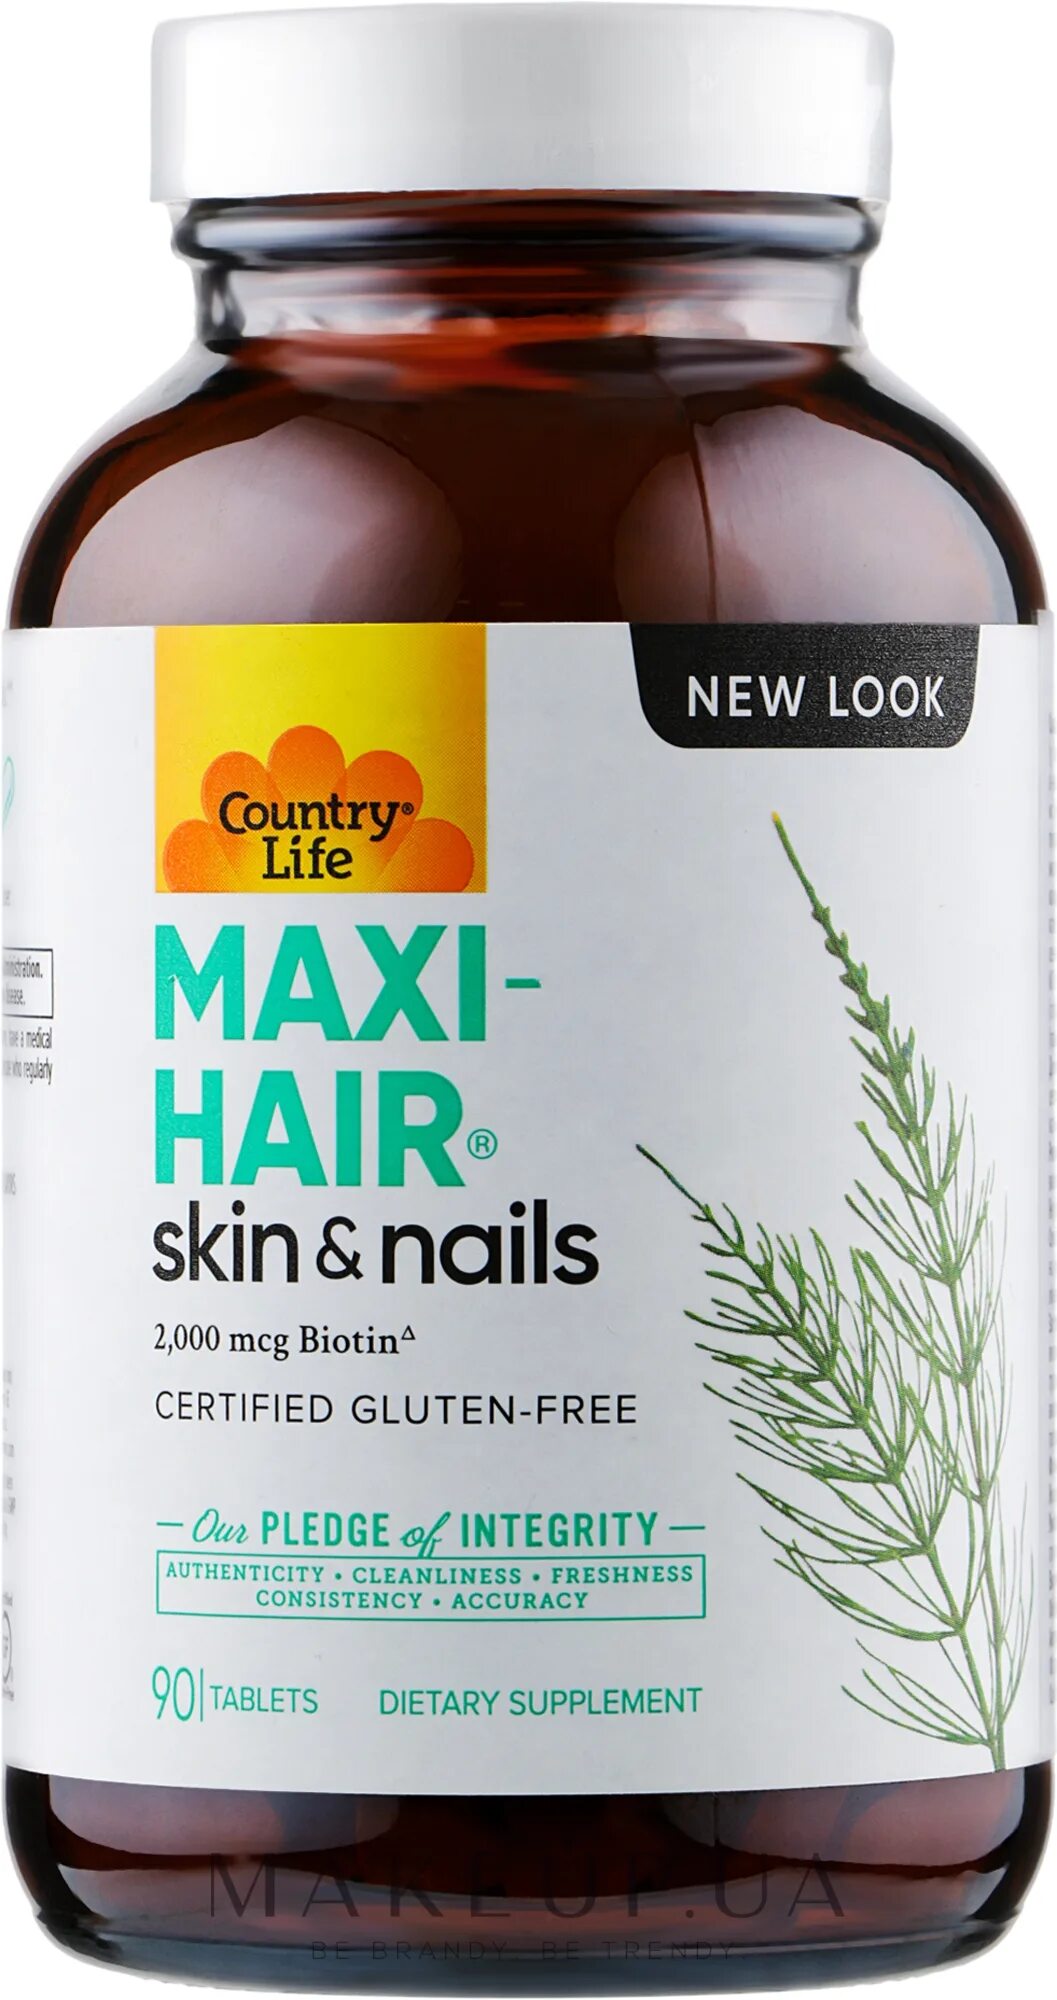 Maxi hair plus. Maxi hair витамины. Country Life Maxi hair Plus. Макси Хаир витамины для волос. Maxi Life витамины.